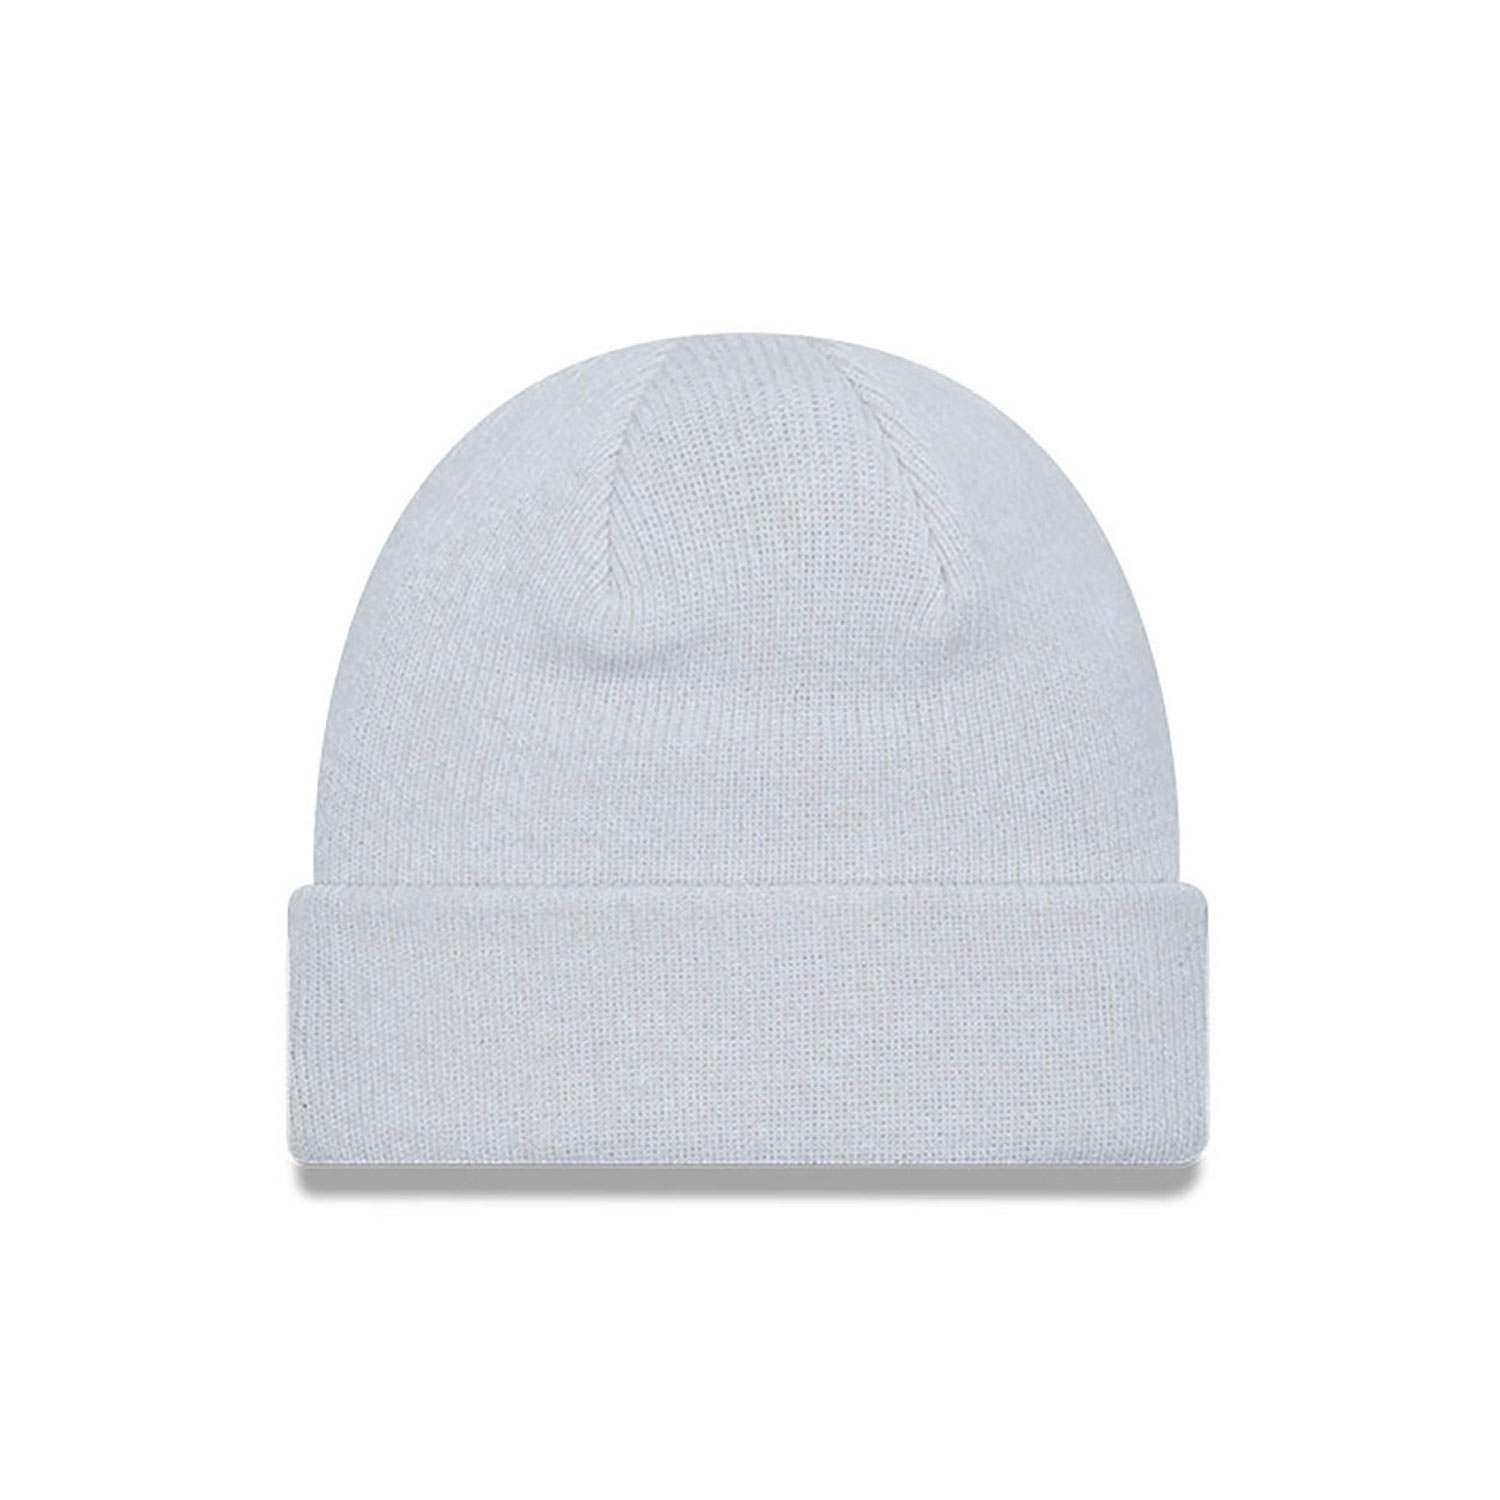 White Beanies | White Beanie Hats | New Era Cap UK